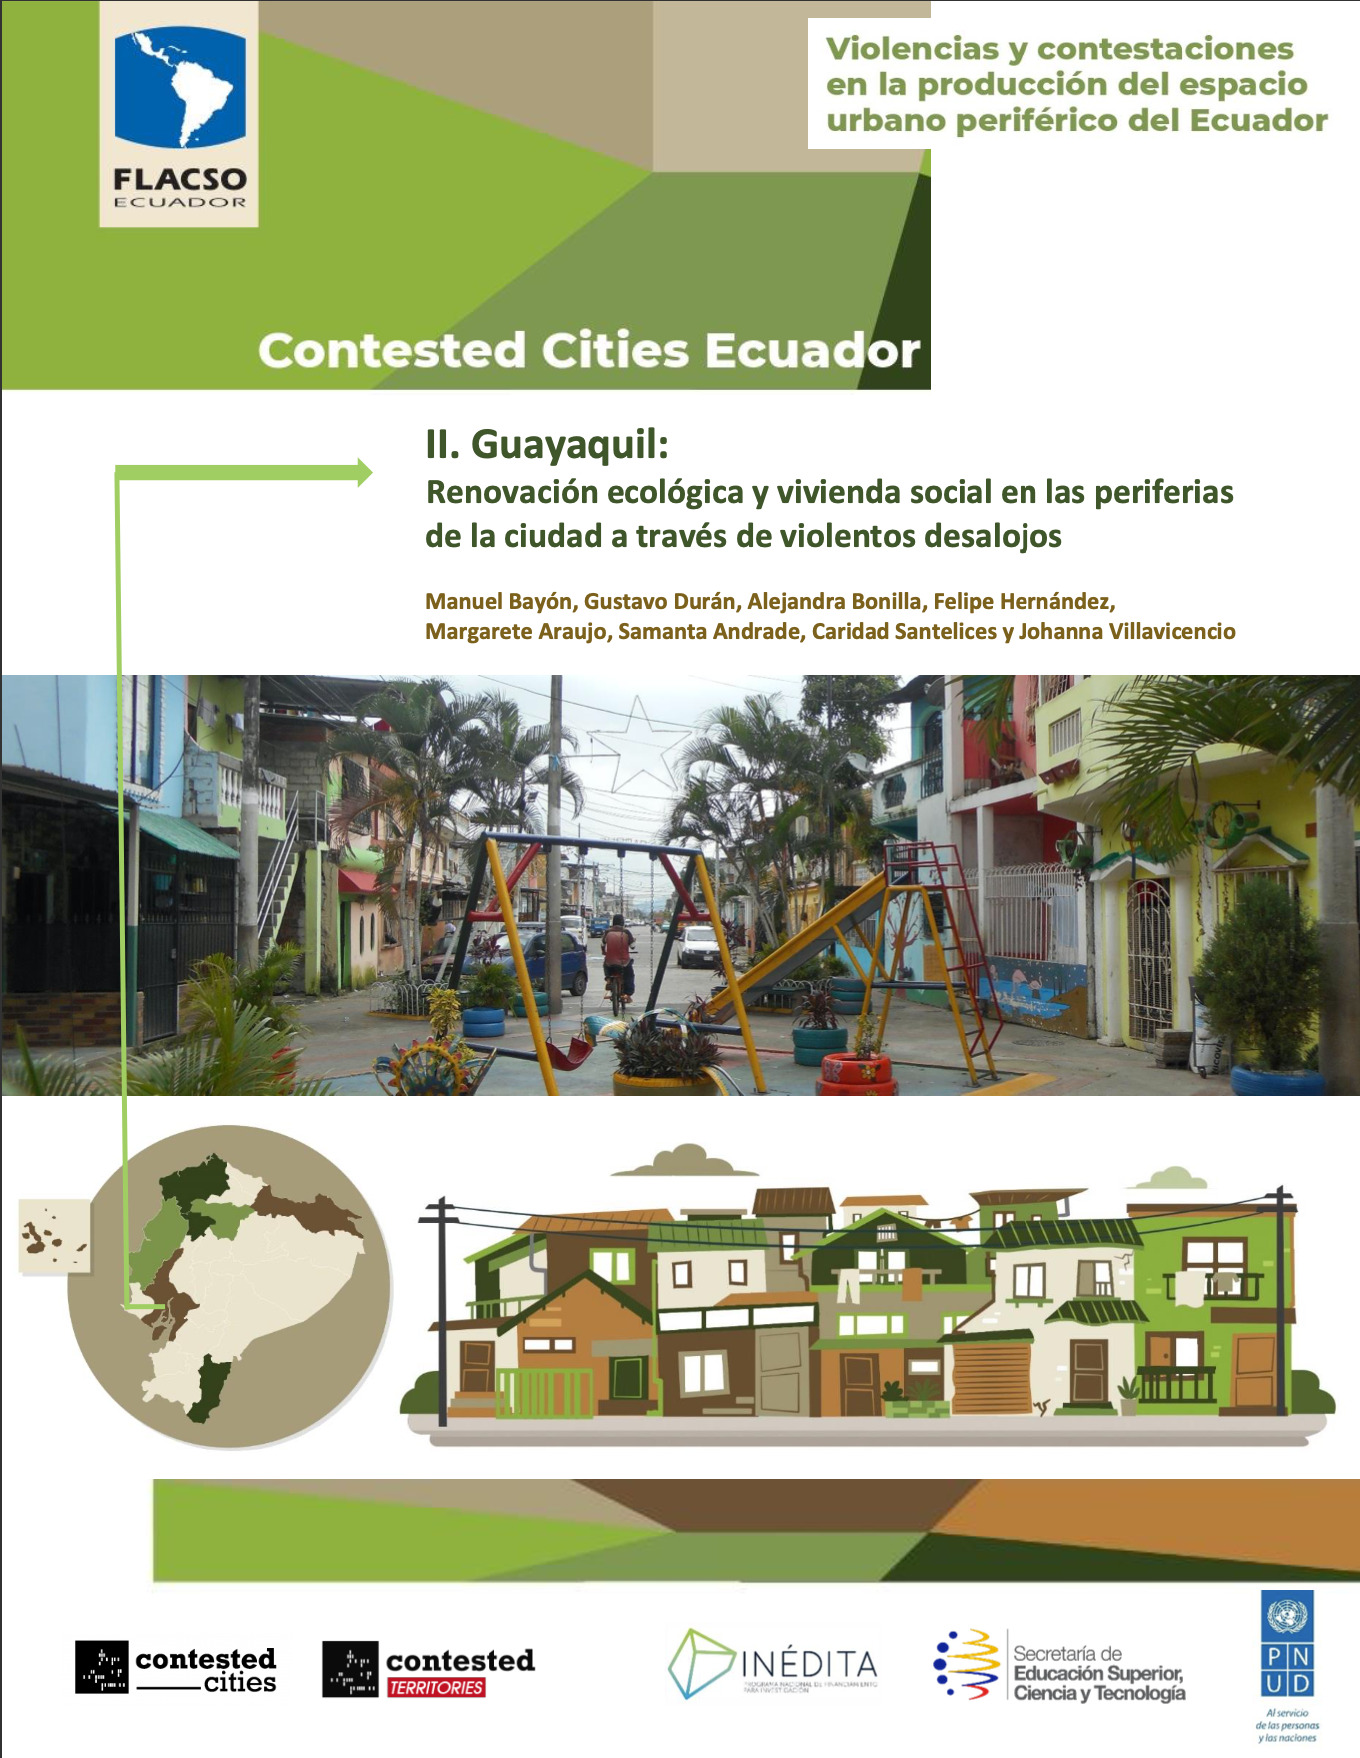 Bayón, Manuel <br>II. Guayaquil: Renovación ecológica y vivienda social en las periferias de la ciudad a través de violentos desalojos<br/>Quito, Ecuador: FLACSO Ecuador. 2020. 37 páginas 